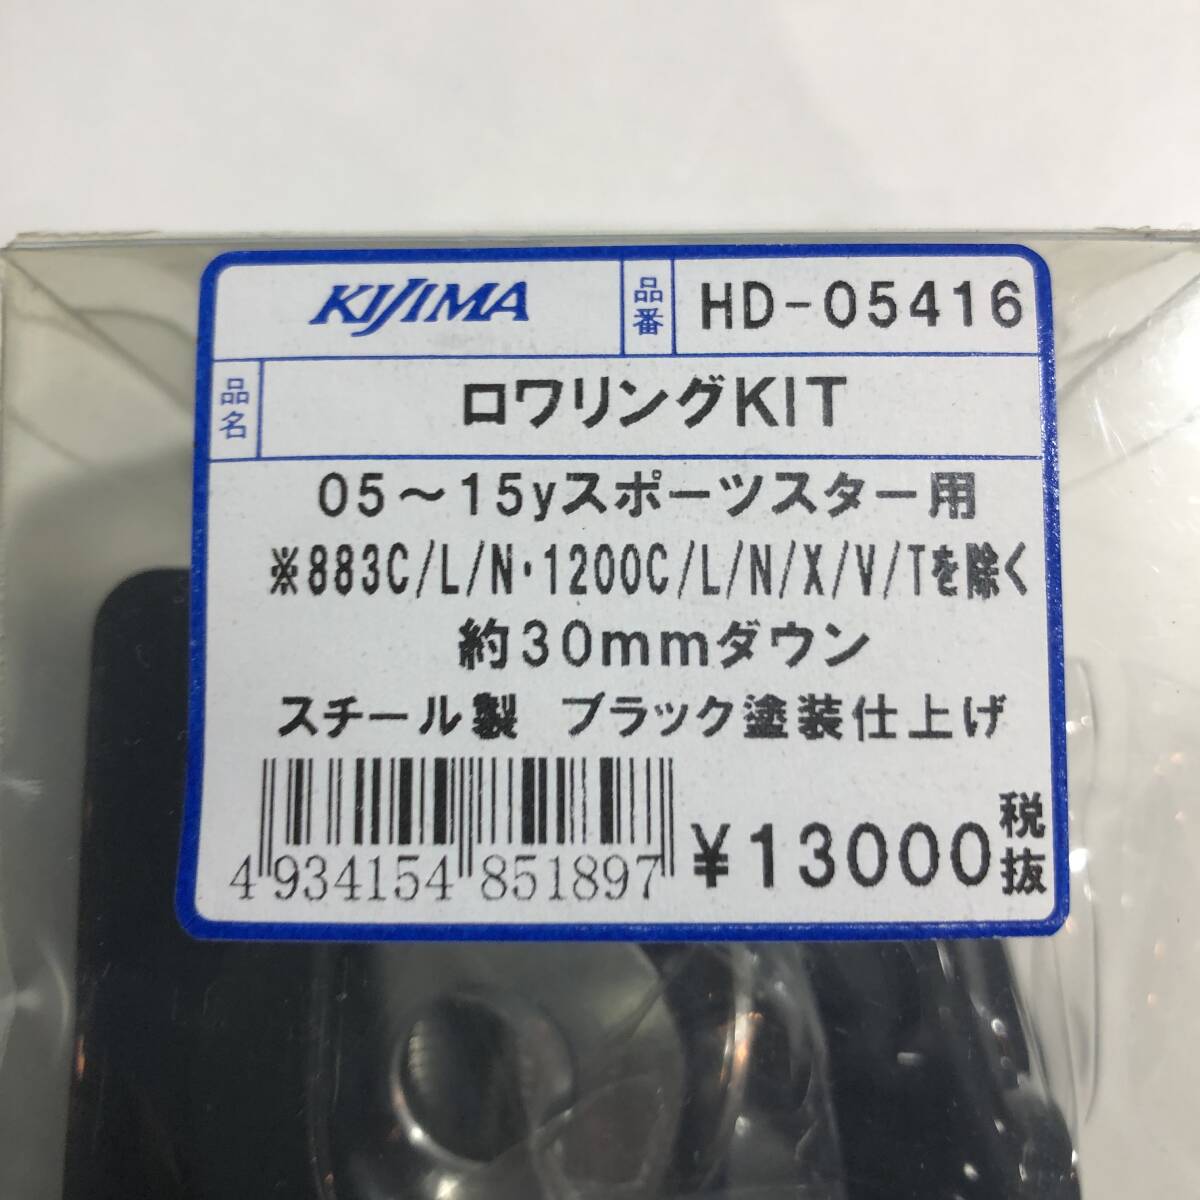 KIJIMA キジマ HD-05416 ロワリングKIT 05~15yスポーツスター用 約30mmダウン スチール製 ブラック塗装仕上げ_画像2